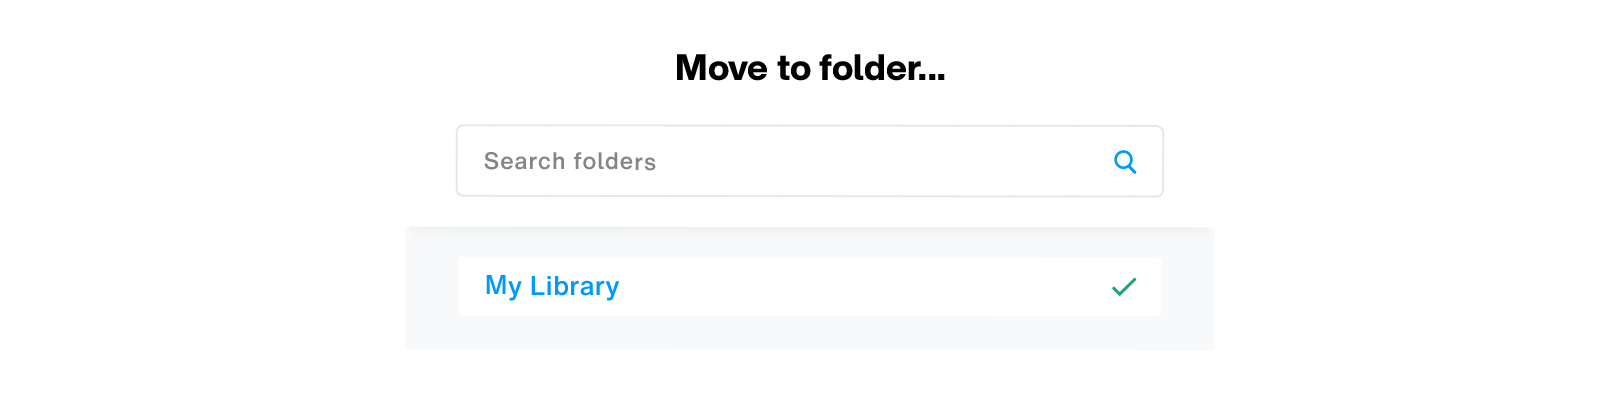 Move to folder dialog 02